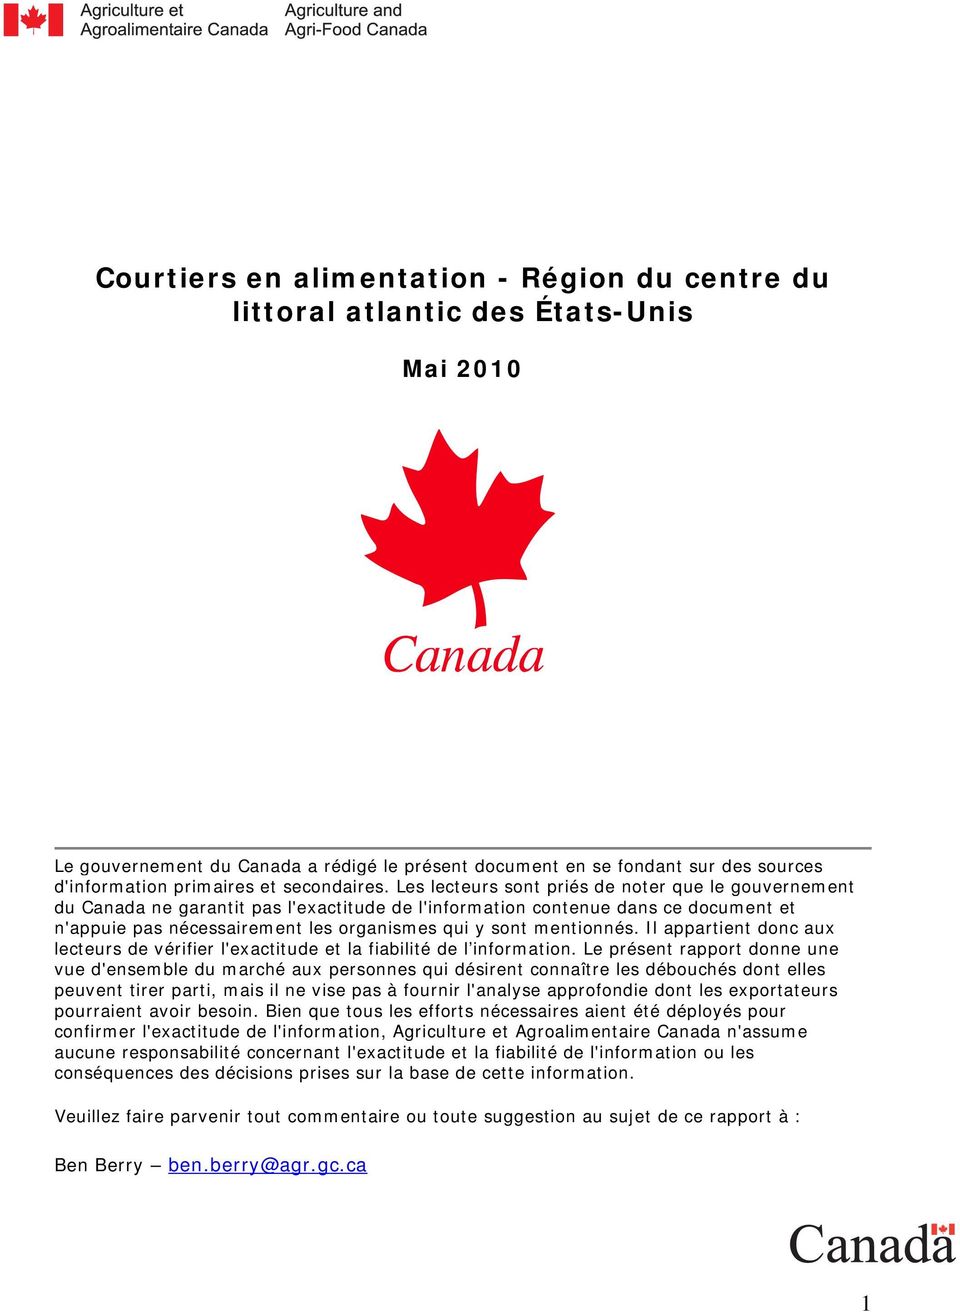 Les lecteurs sont priés de noter que le gouvernement du Canada ne garantit pas l'exactitude de l'information contenue dans ce document et n'appuie pas nécessairement les organismes qui y sont